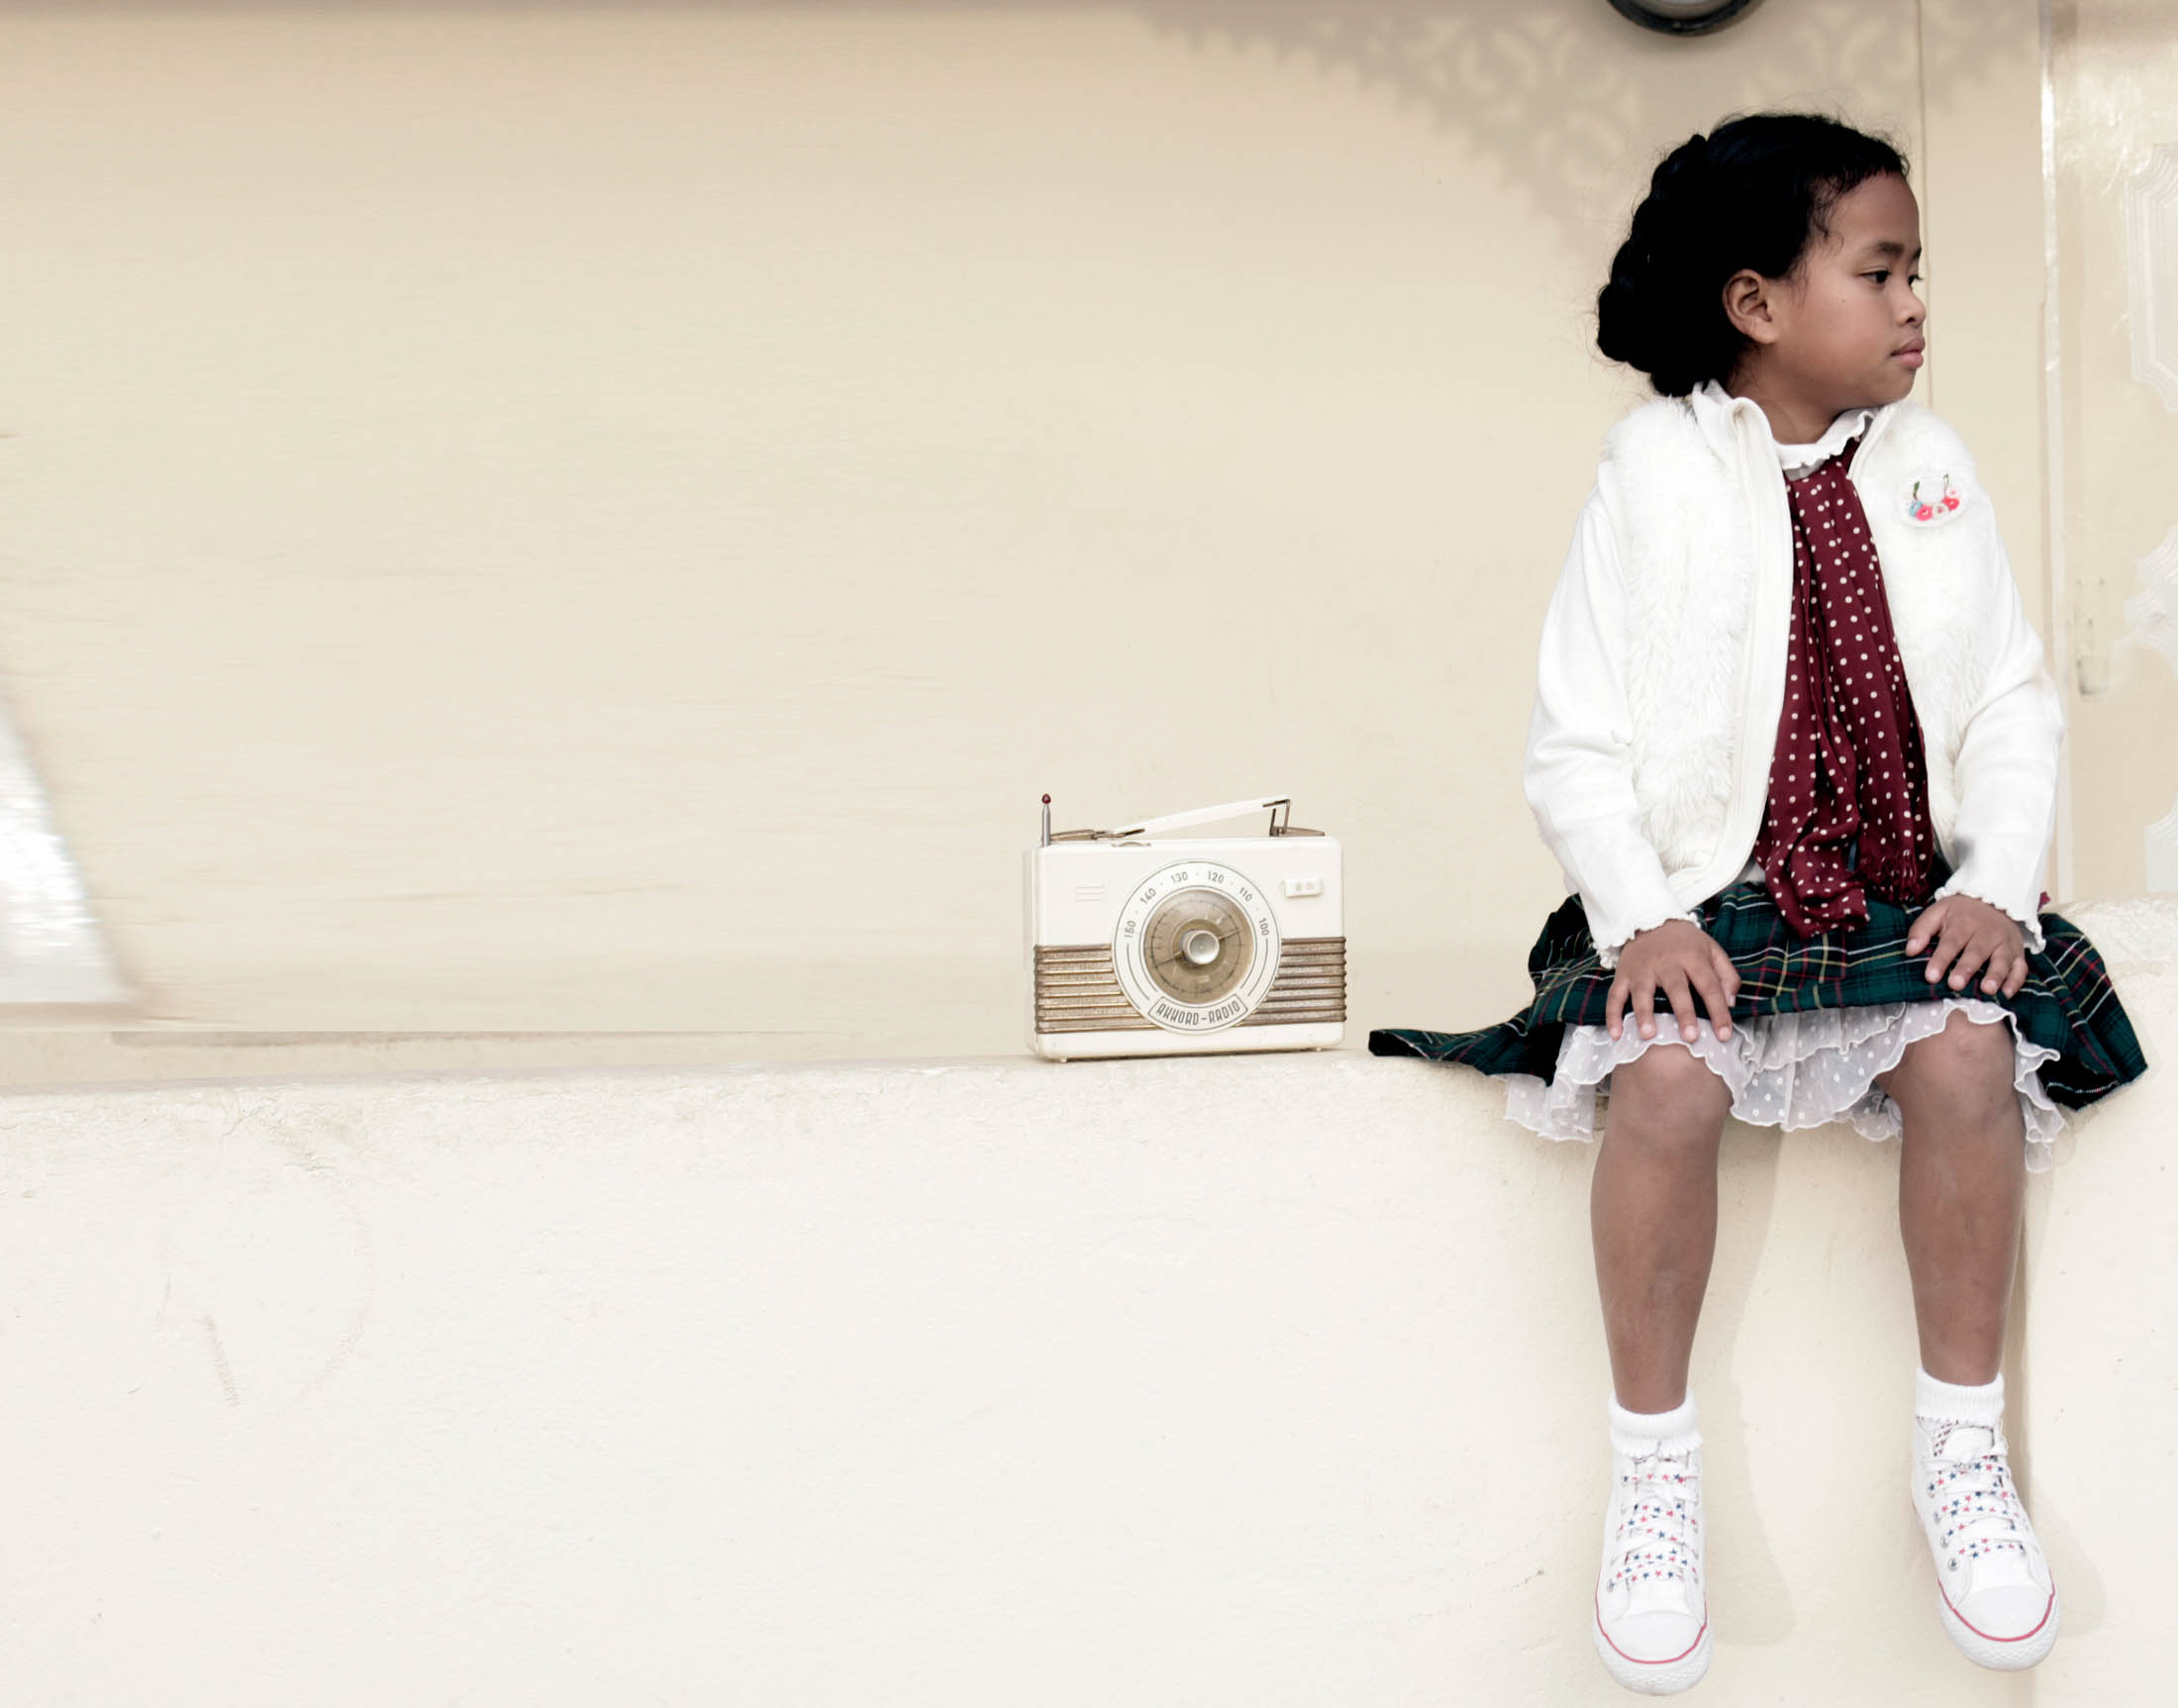 Ein junges Mädchen in weißer Jacke und gemustertem Rock sitzt neben einem altmodischen Radio auf einem Sims und blickt nachdenklich zur Seite. © Fotografie Tomas Rodriguez